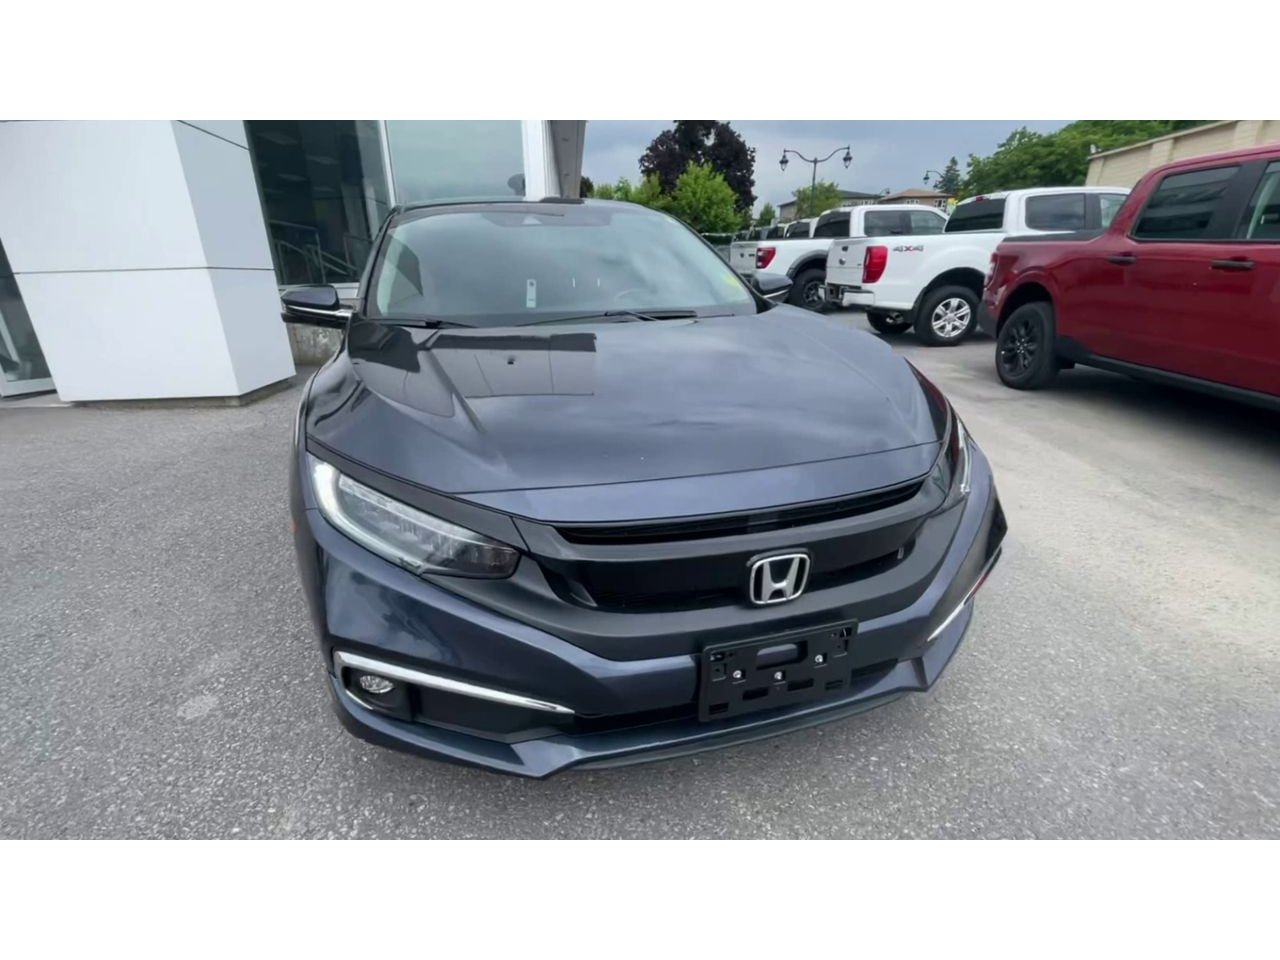 2019 Honda Civic Sedan - P21117 Full Image 3